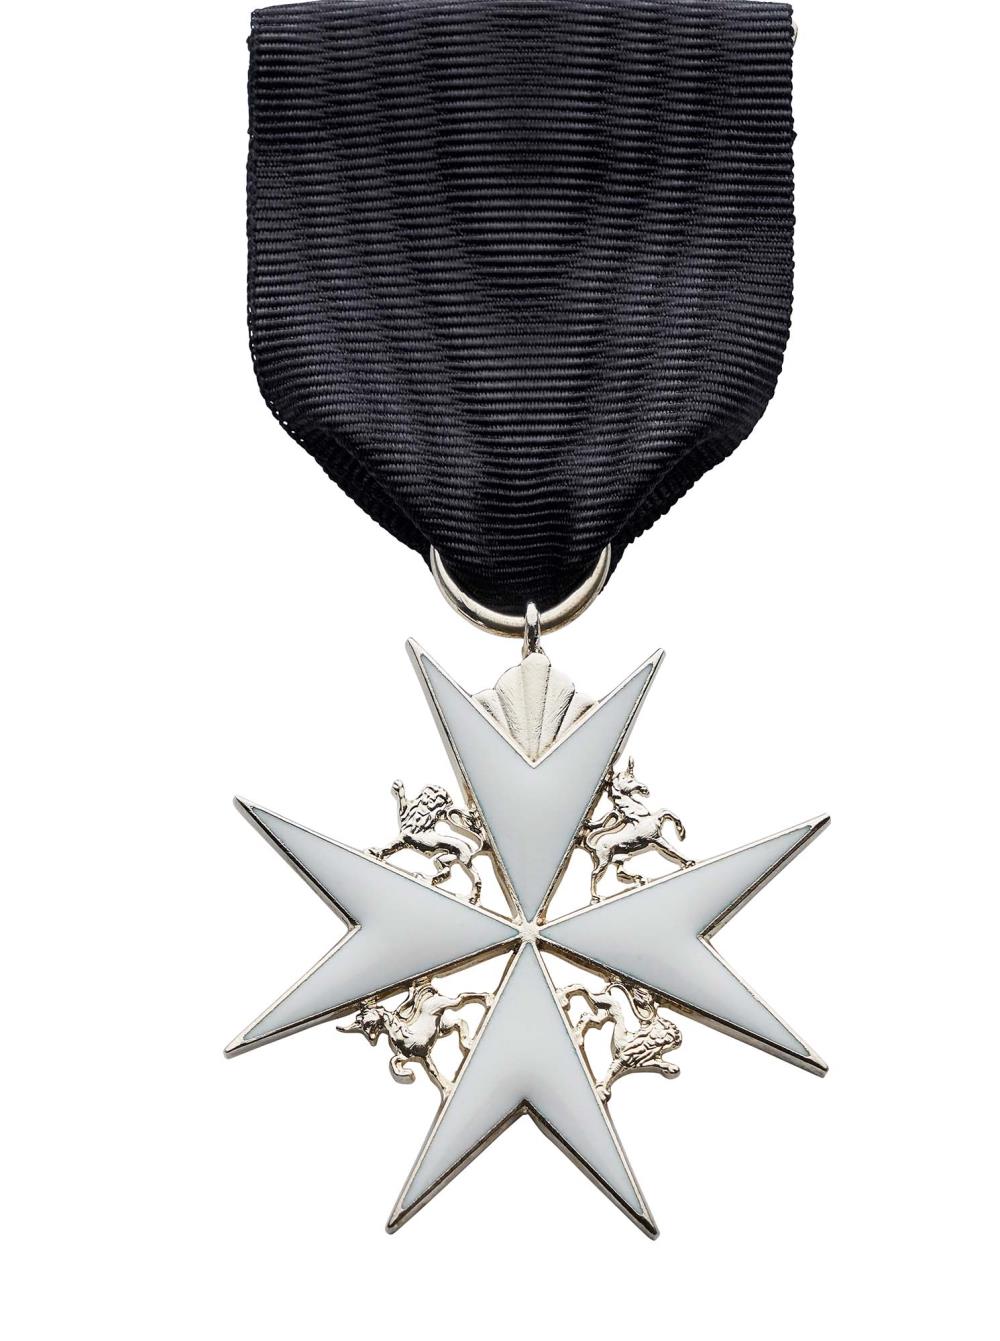 Worcestershire Medal Service: Officer Order of St John